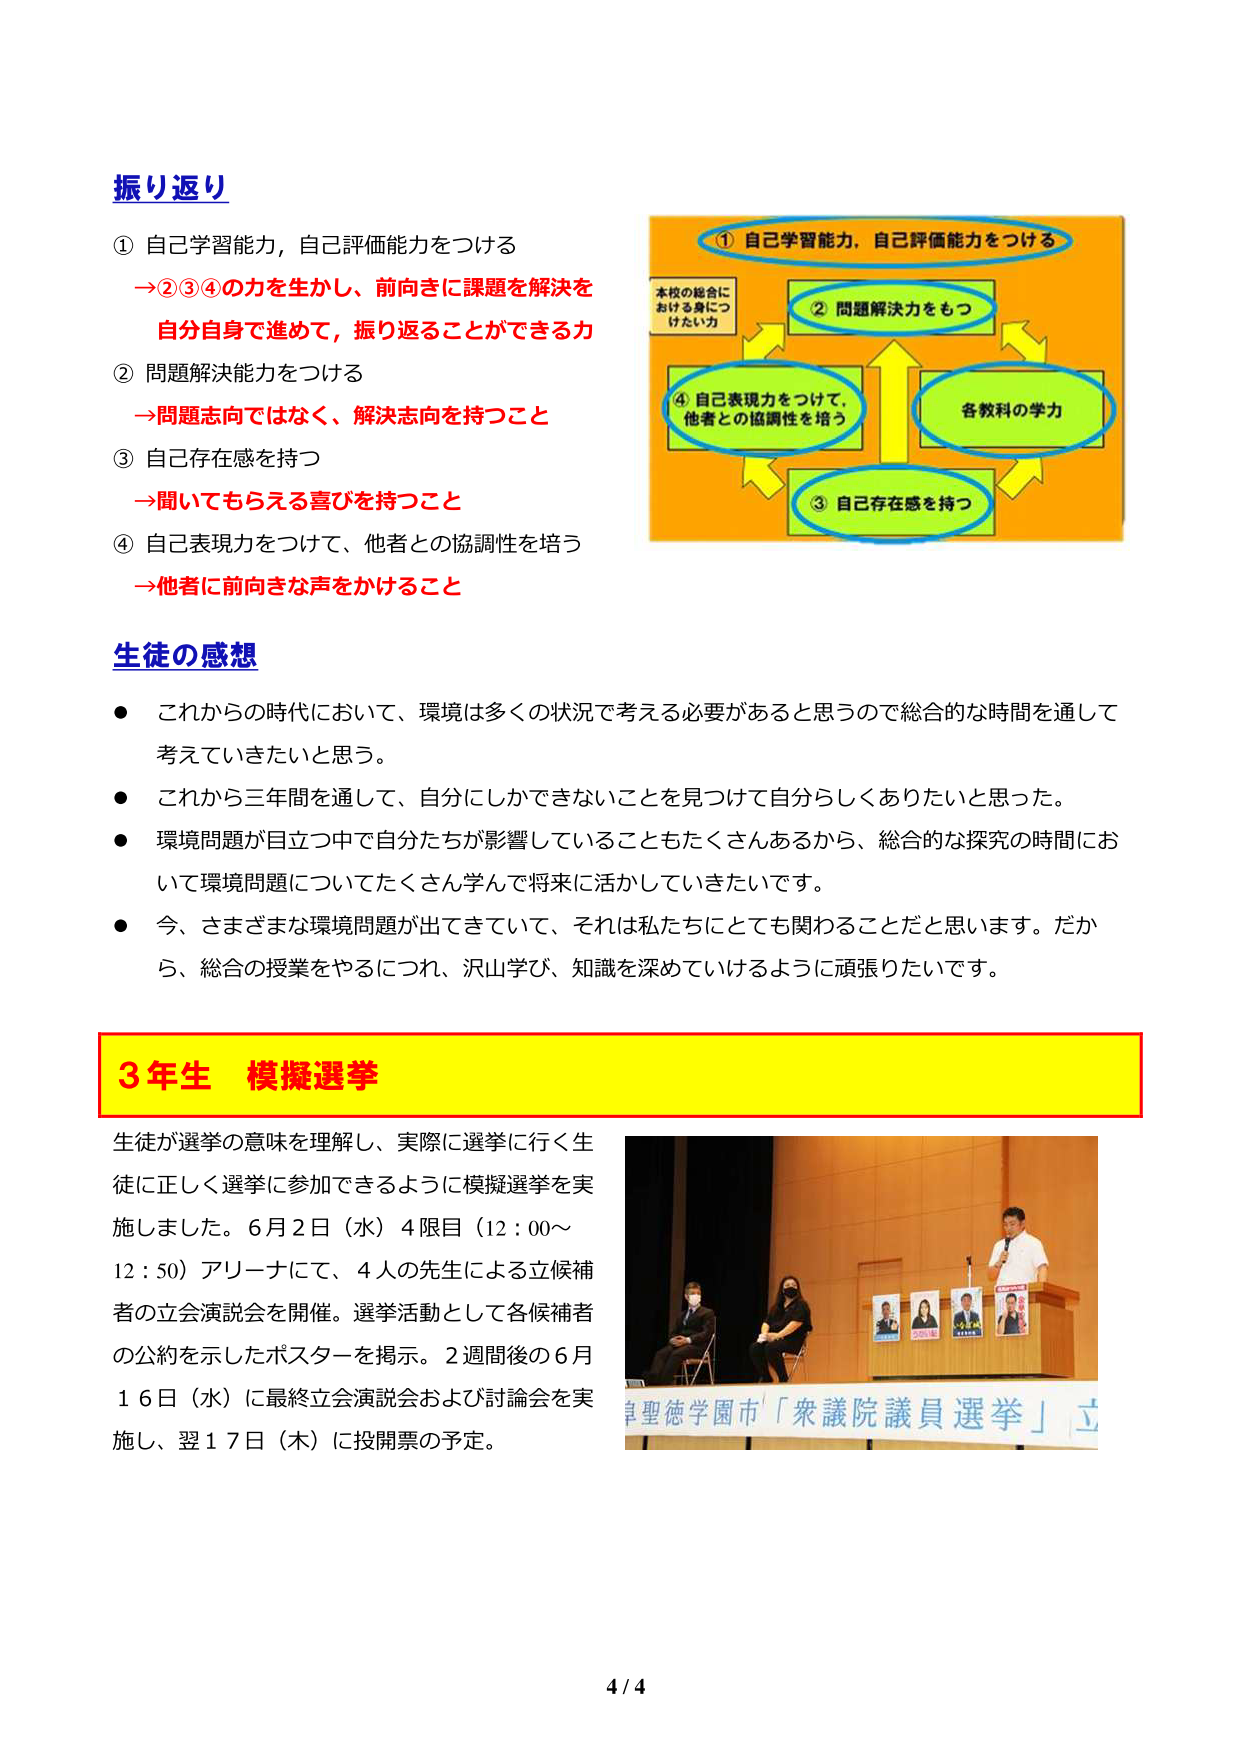 http://www.shotoku.jp/gsh/news/1%E5%8F%B7-%20A4_04.png